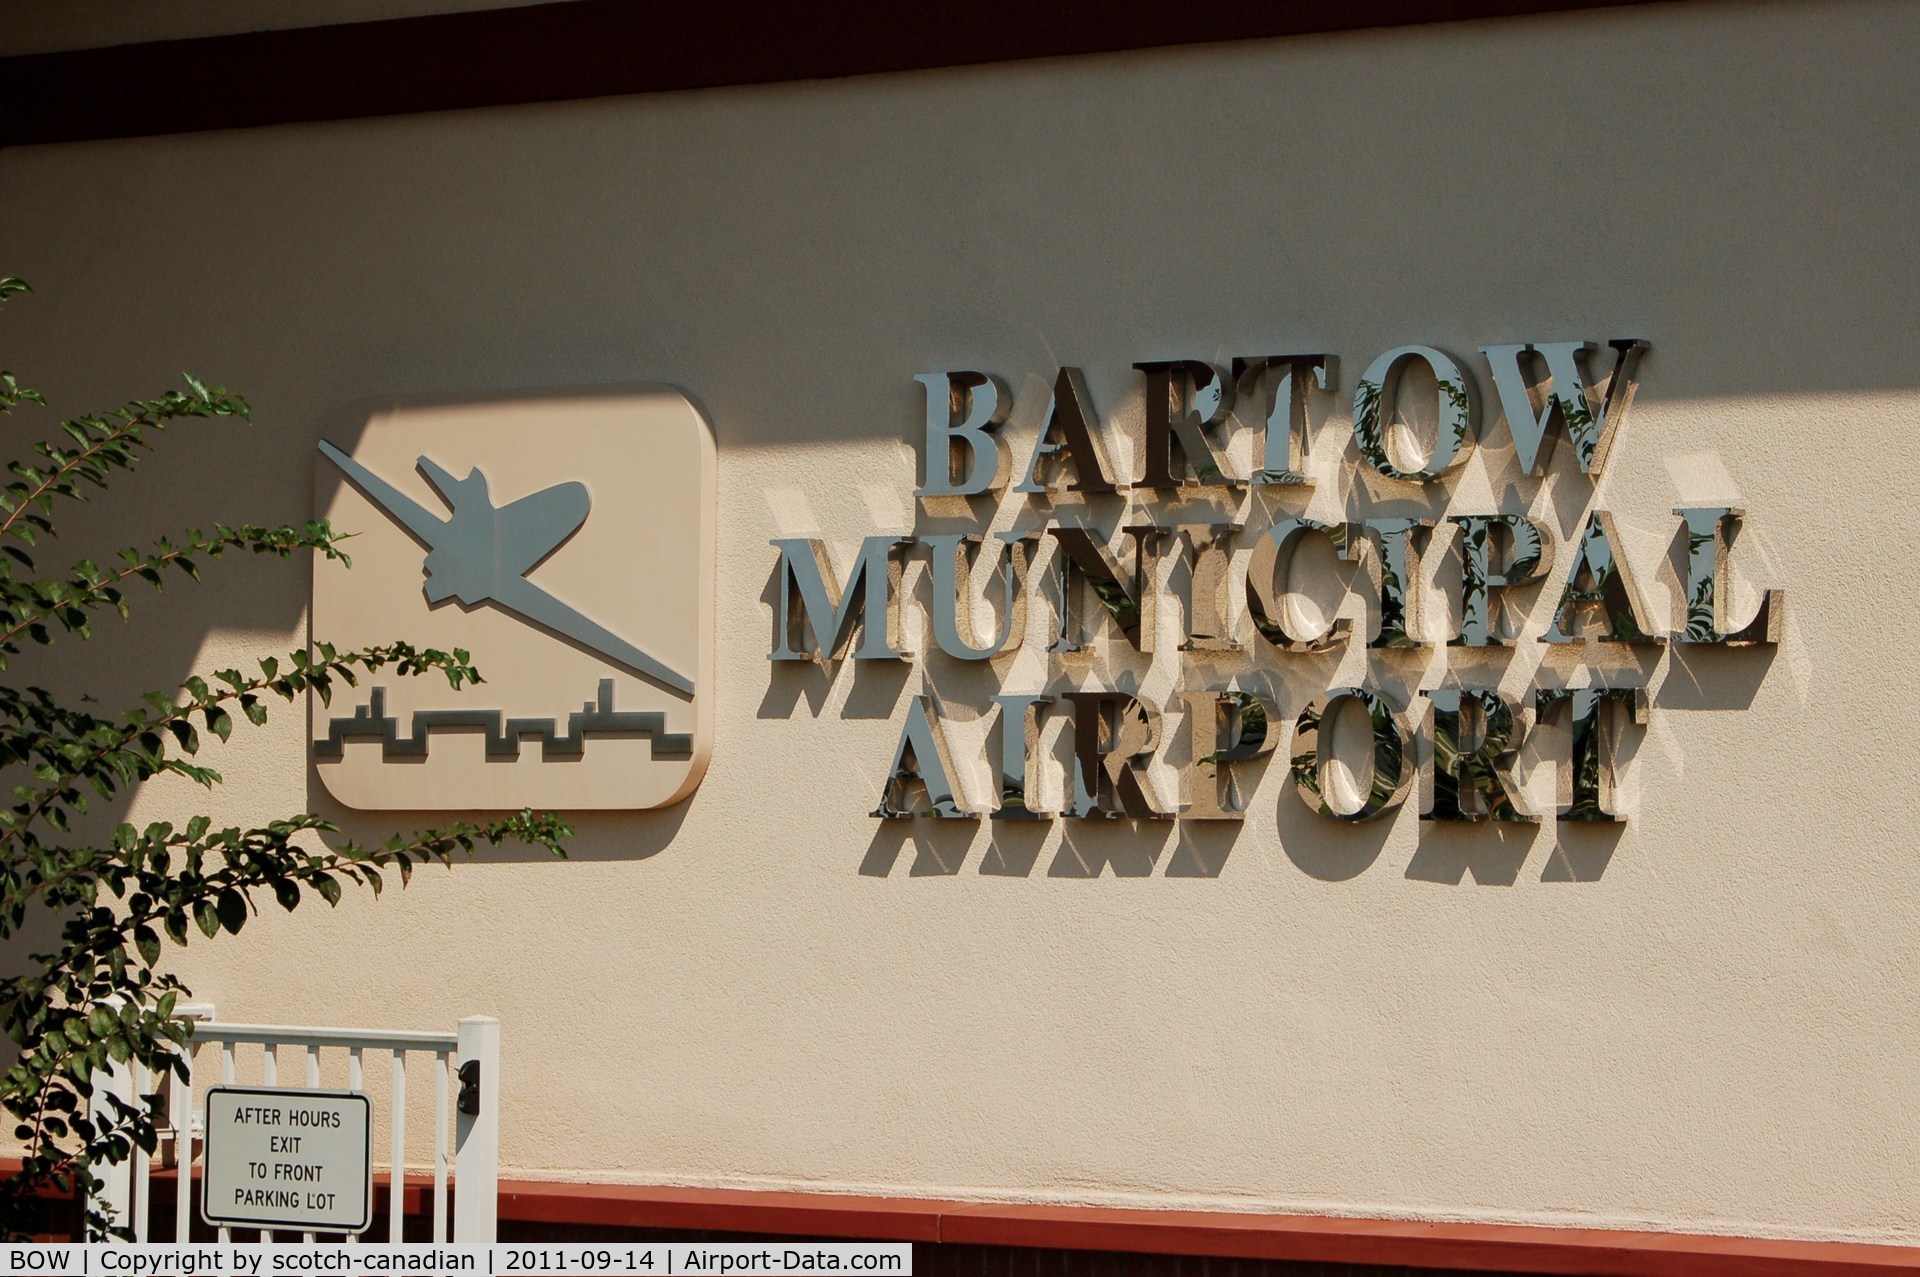 Bartow Municipal Airport (BOW) - Sign at Bartow Municipal Airport, Bartow, FL